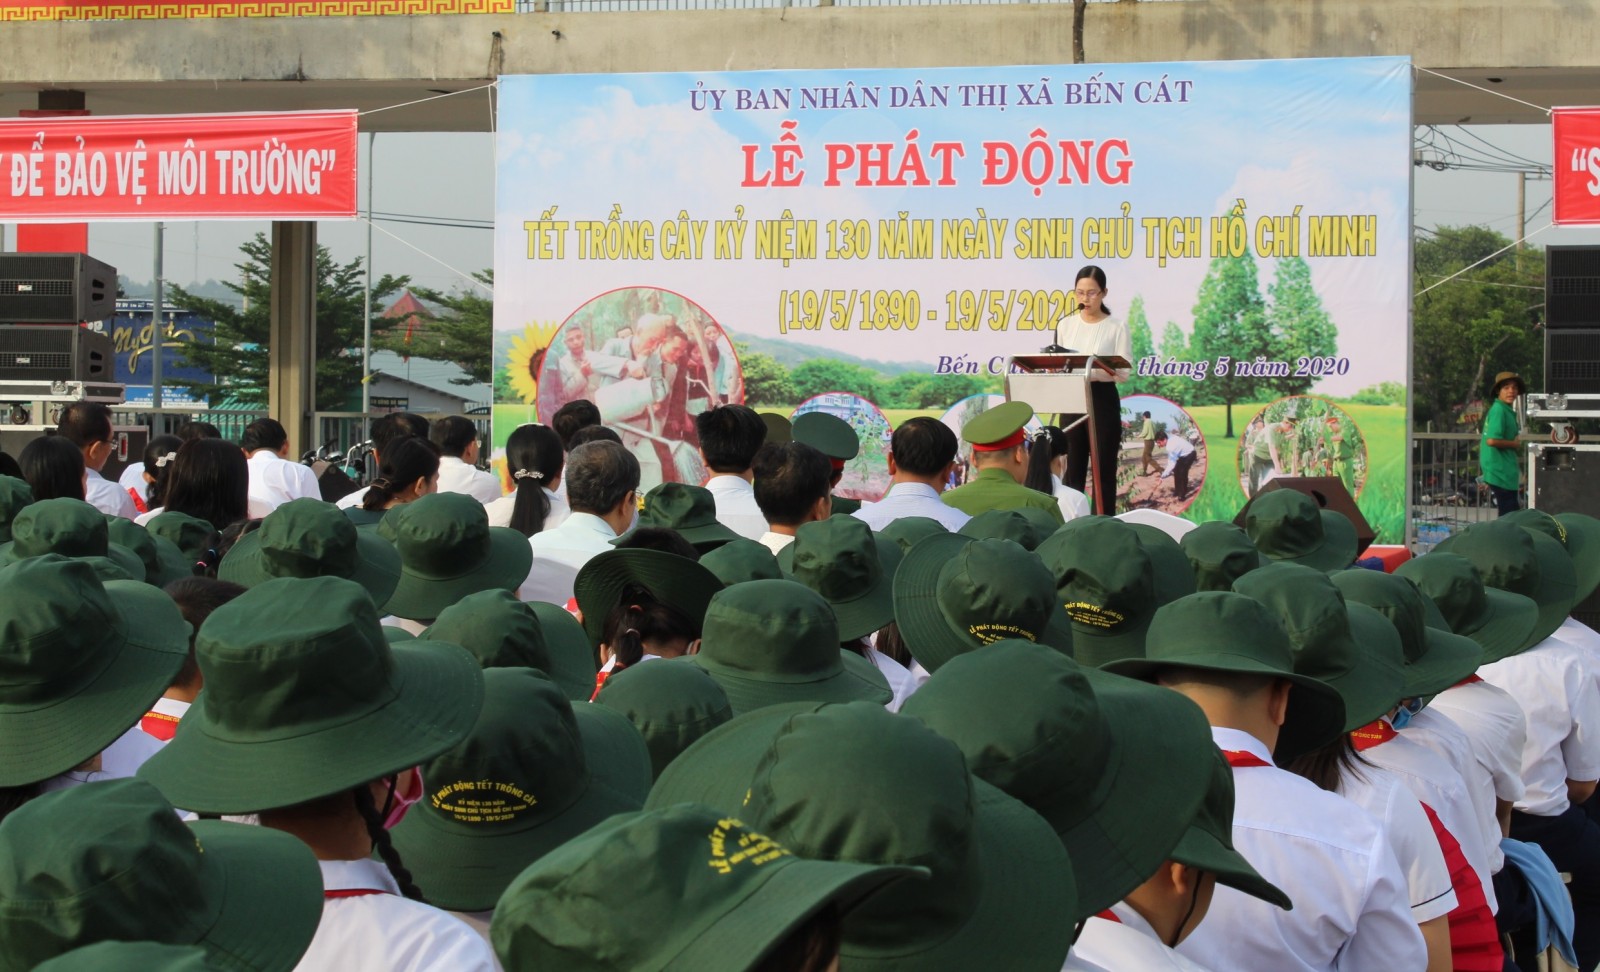 Phát động Tết trồng cây kỷ niệm 130 năm ngày sinh Chủ tịch Hồ Chí Minh